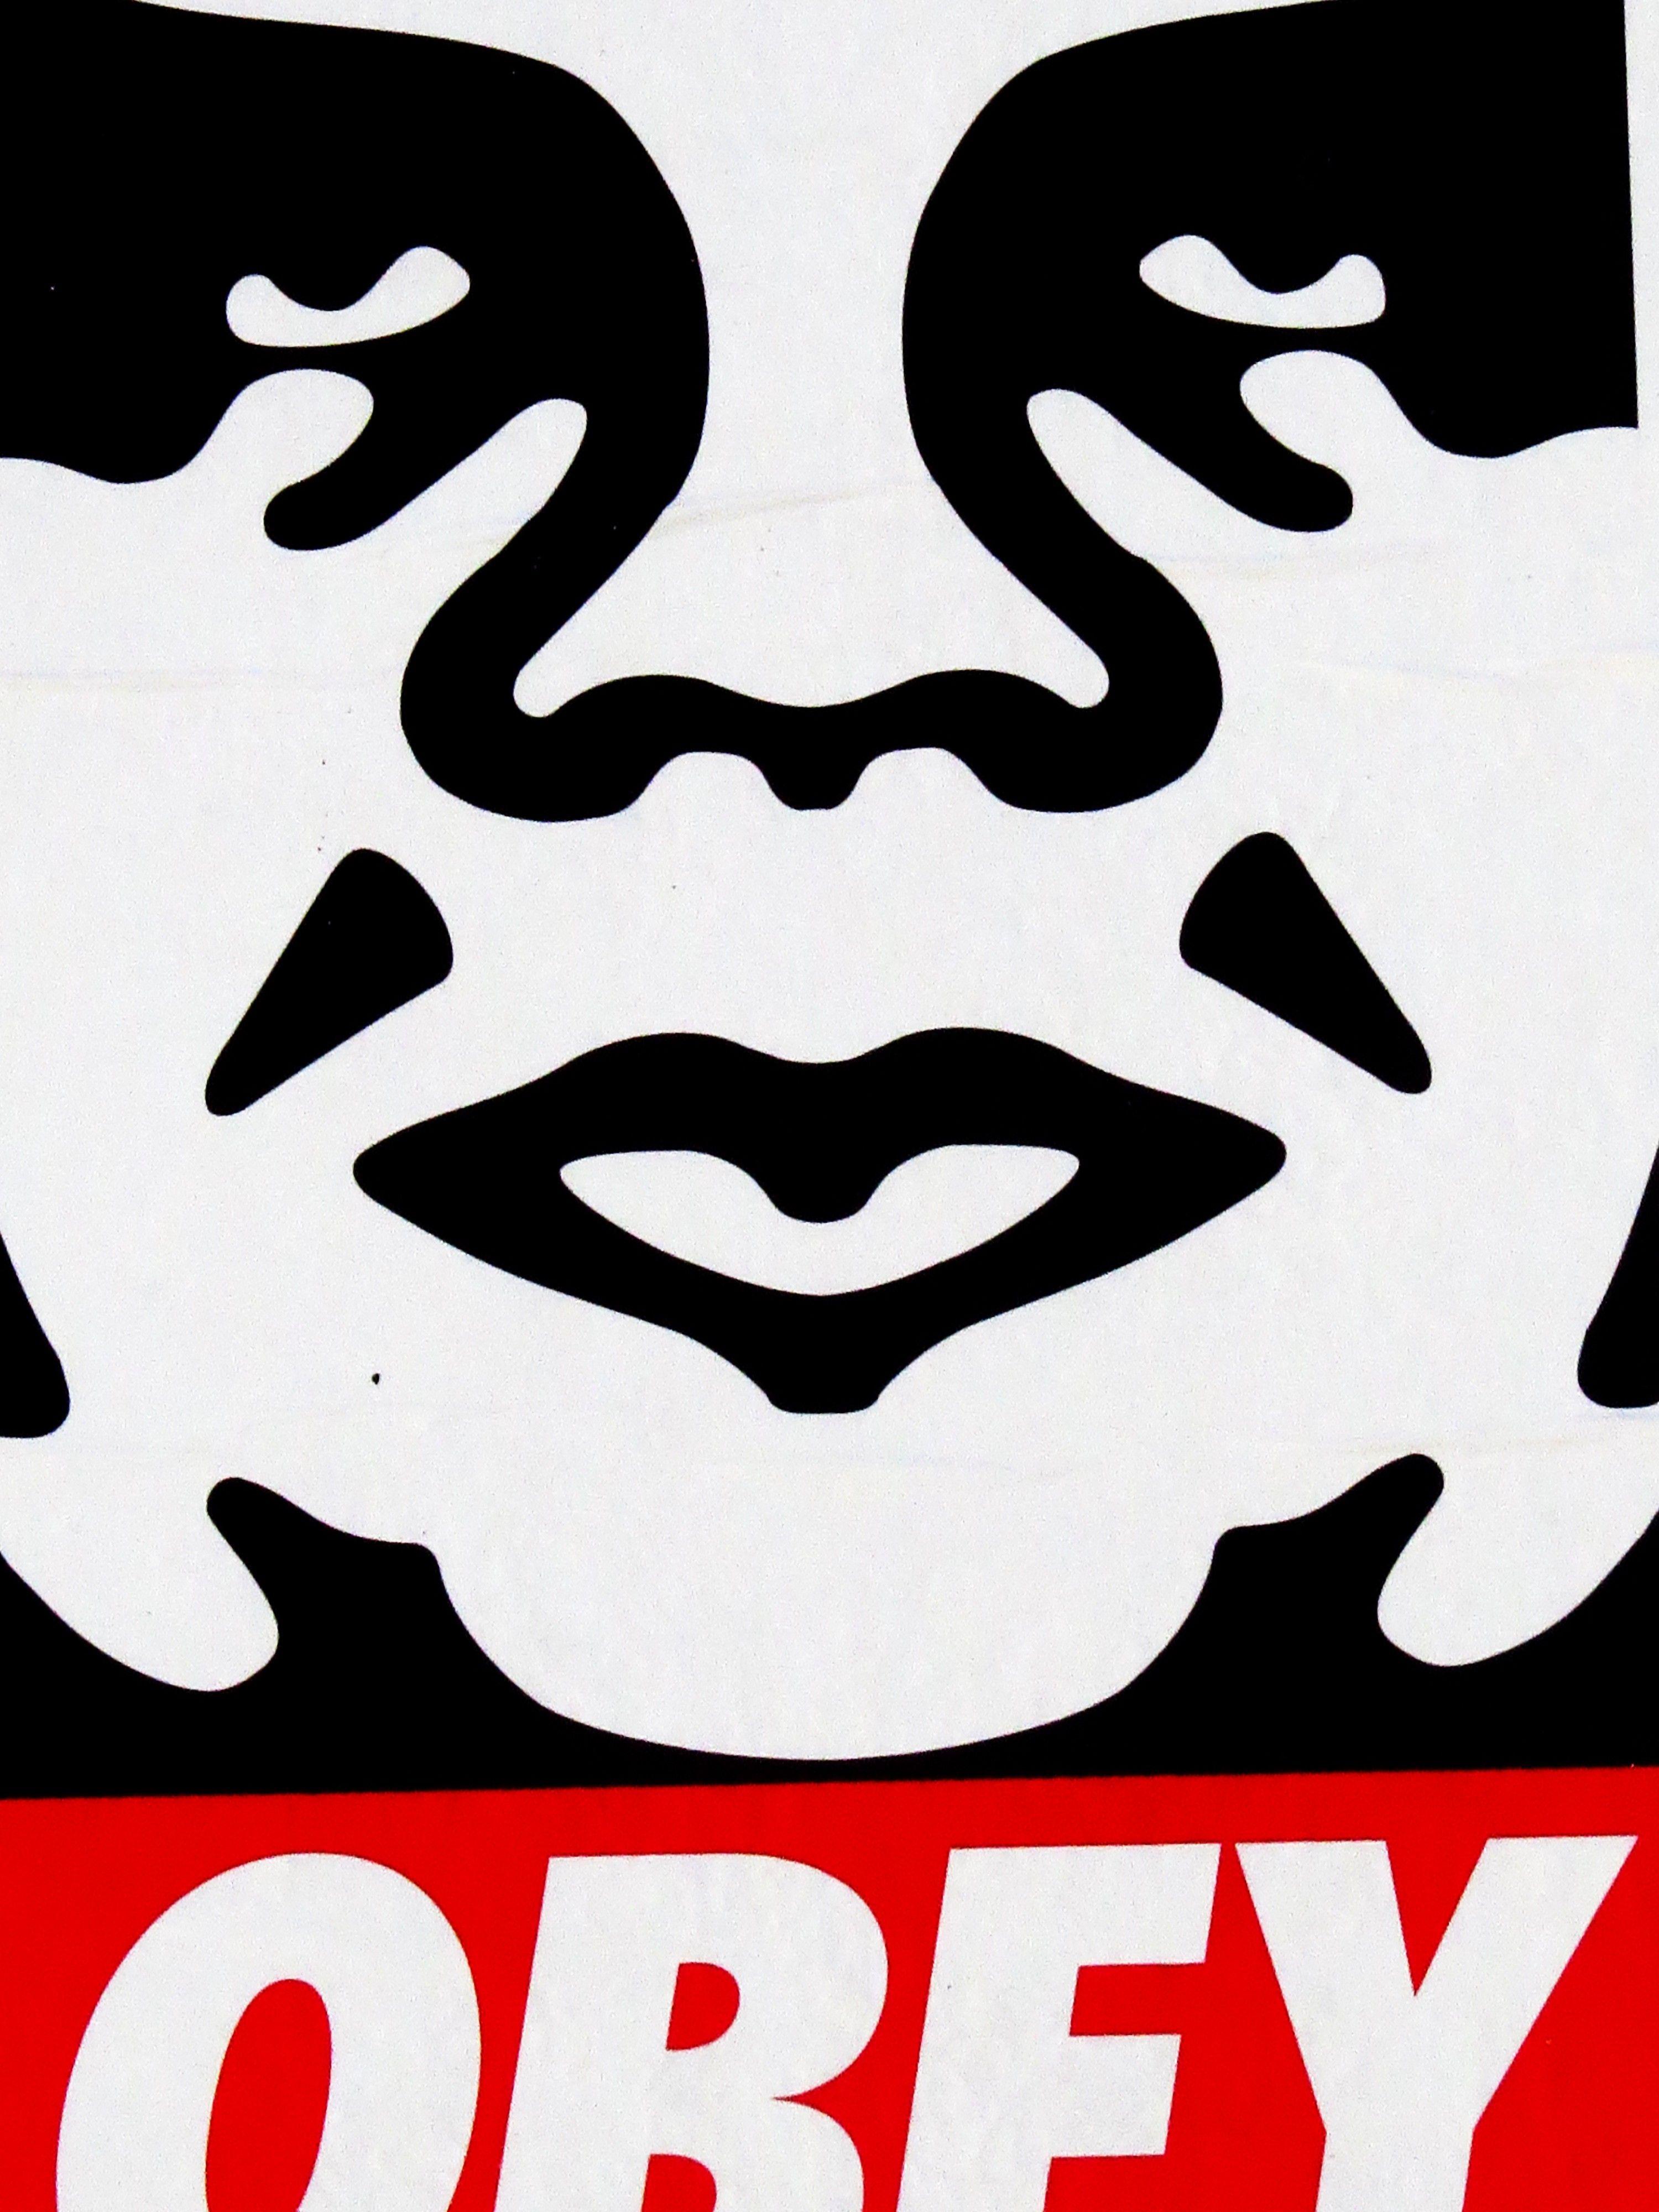 Obey Giant Logo - MIAMI STREET ART: OBEYGIANT by SHEPARD FAIREY IN WYNWOOD – TOKIDOKI ...